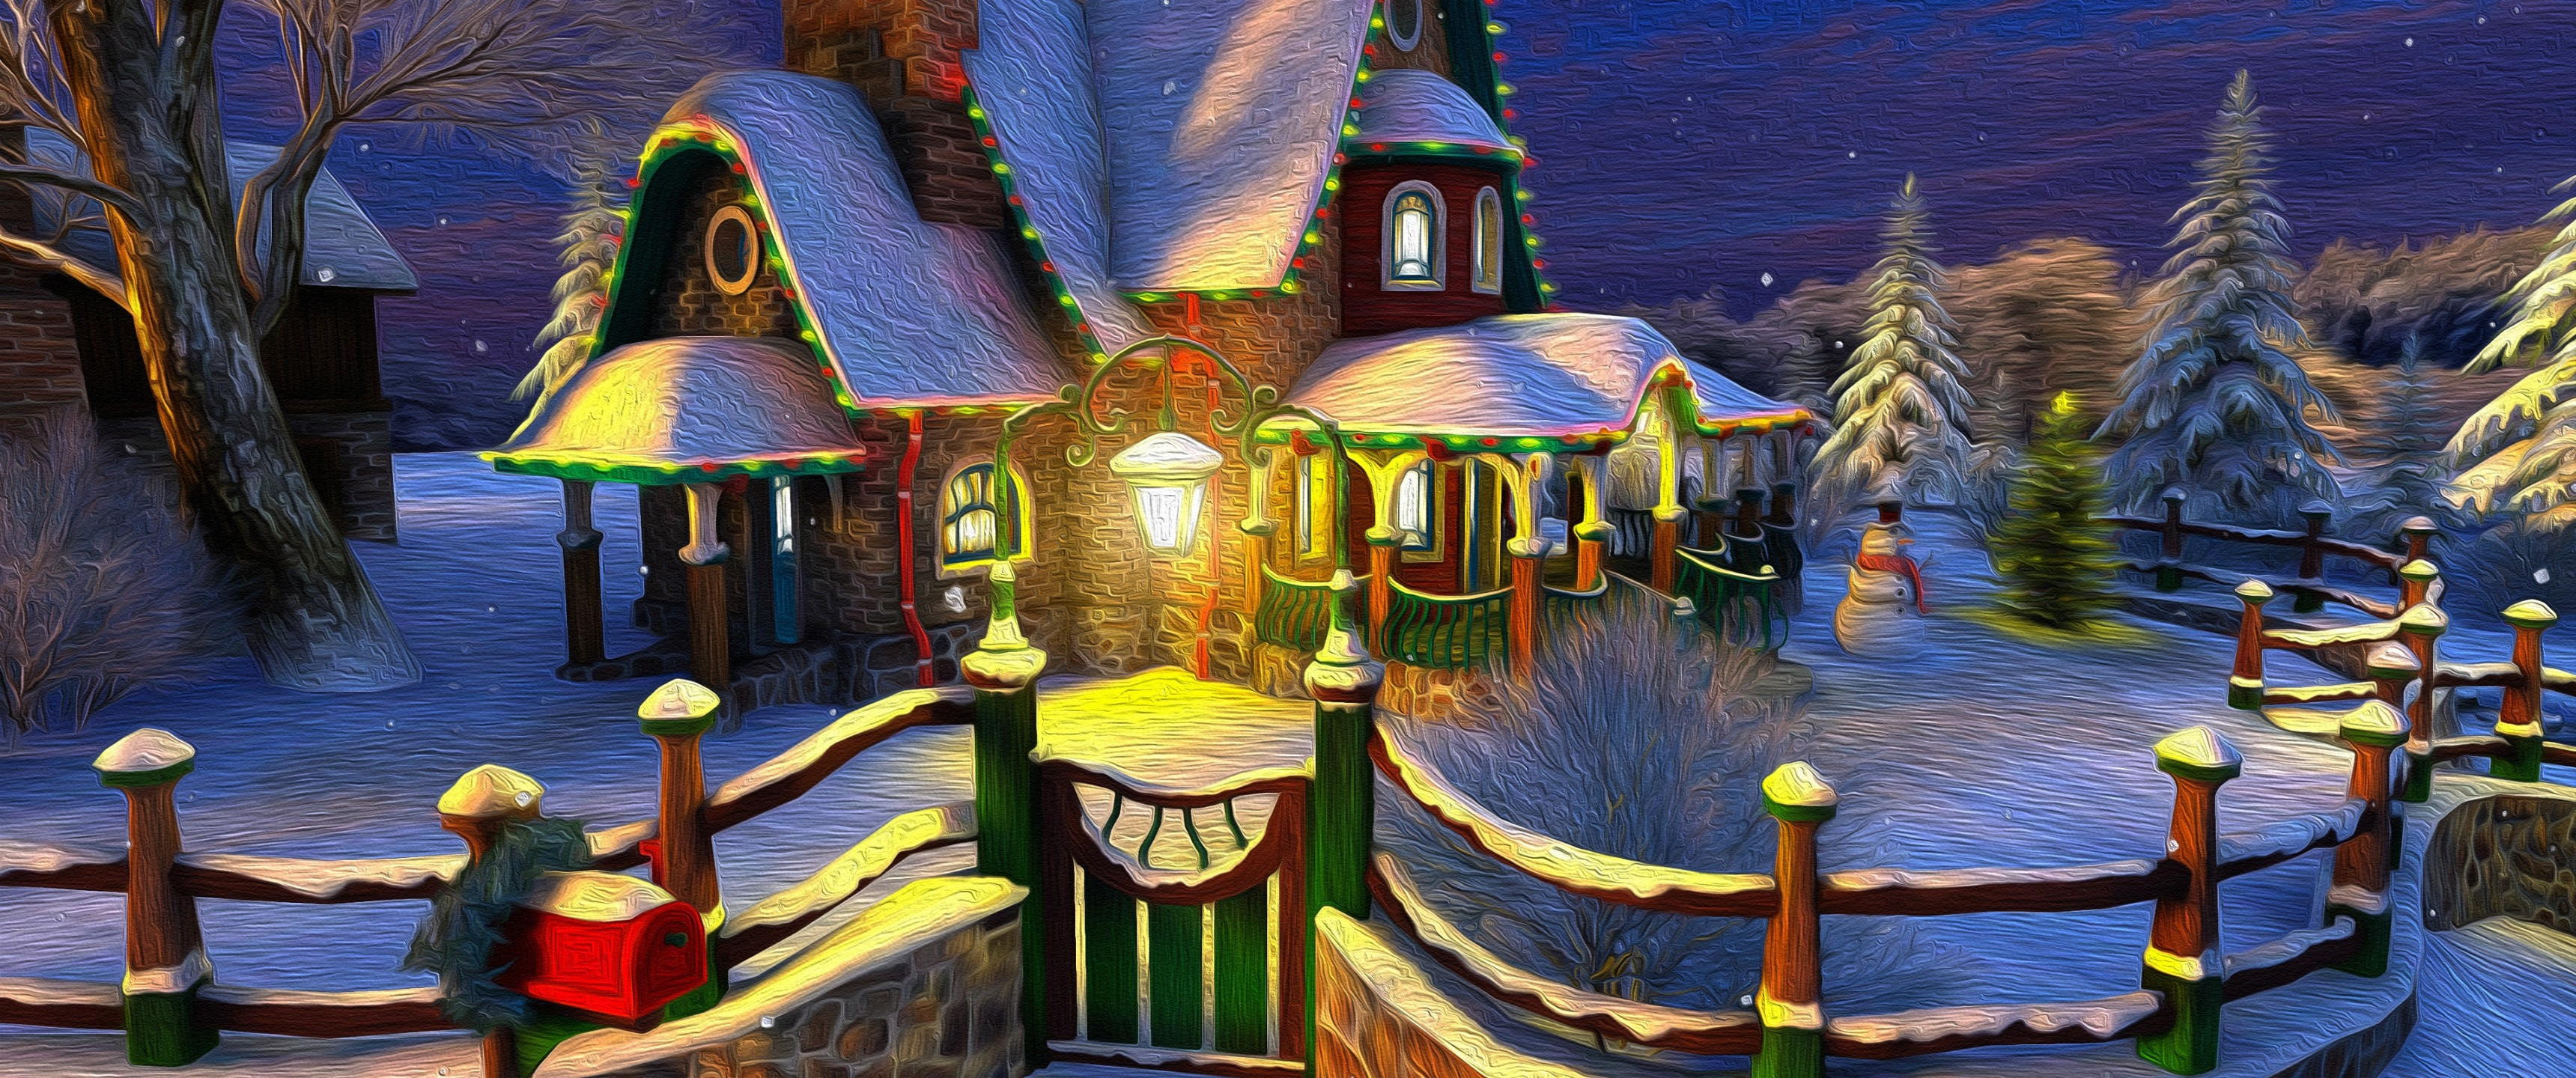 Download 3440x1440 Cozy House, Christmas Door, Fence, Snow, Winter Wallpaper